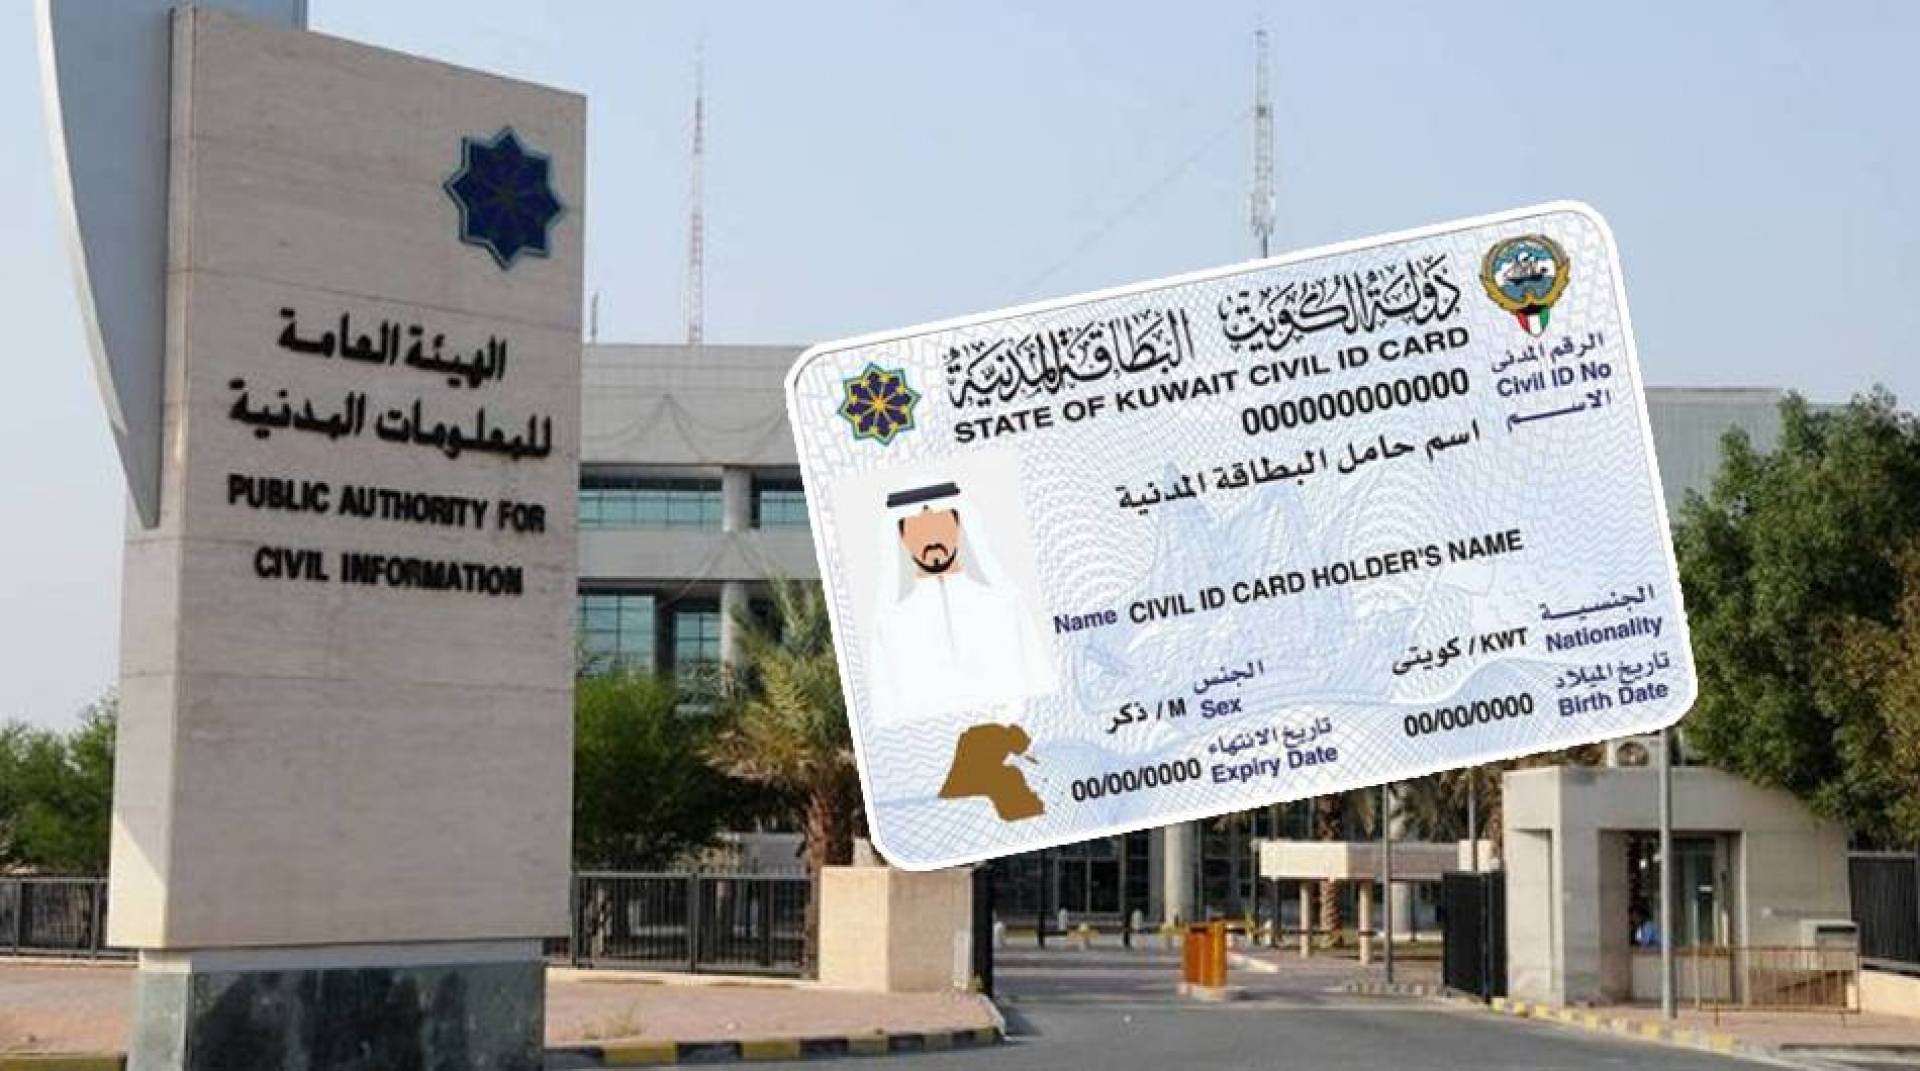 الهيئة العامة للمعلومات المدنية الكويت